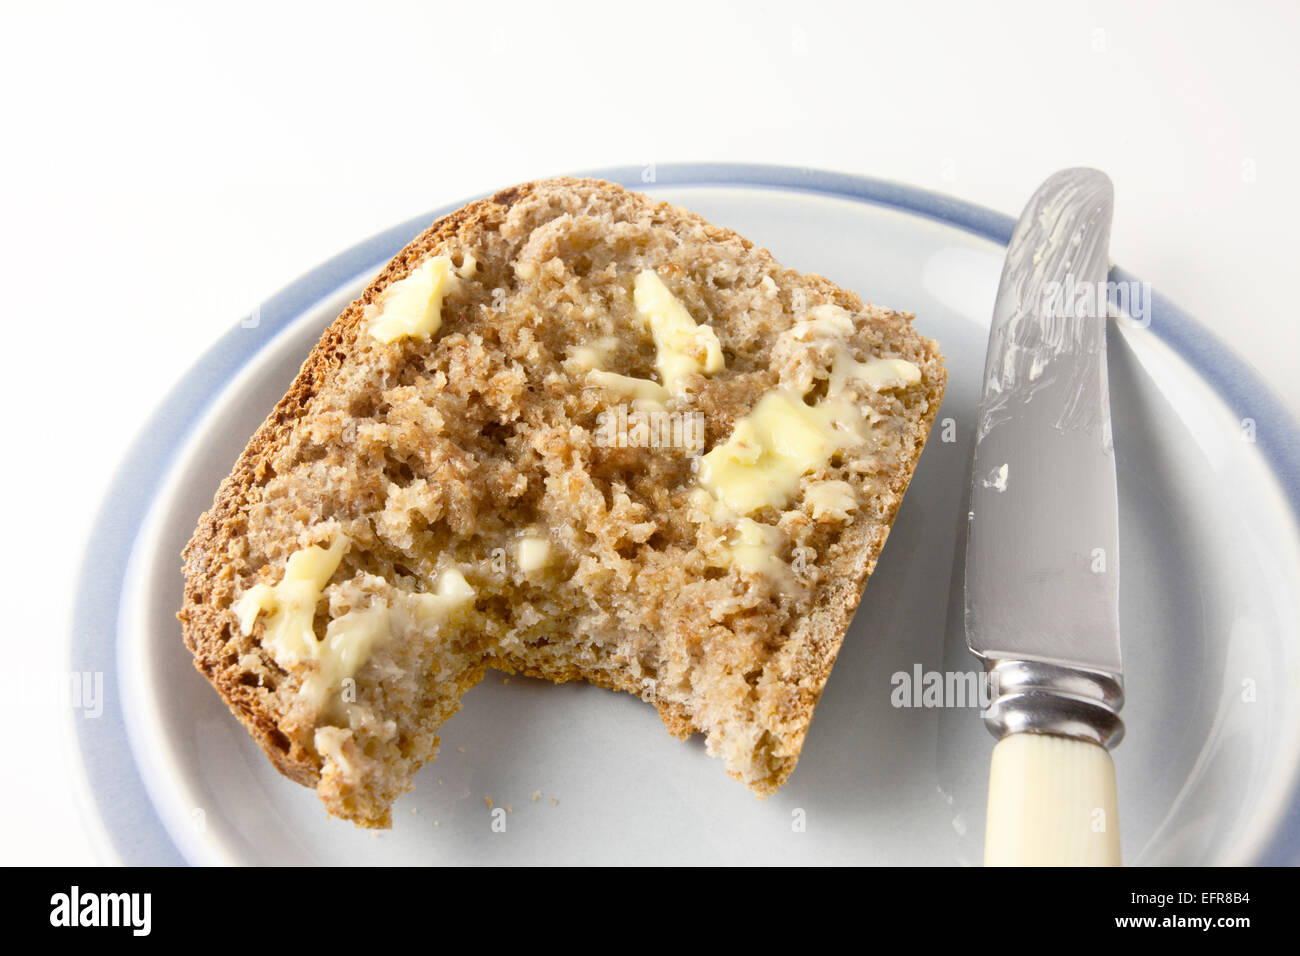 Scheibe des frisch gebackenen warmen Vollkornbrot mit Butter mit Biss genommen auf einem Teller mit einem Messer Stockfoto